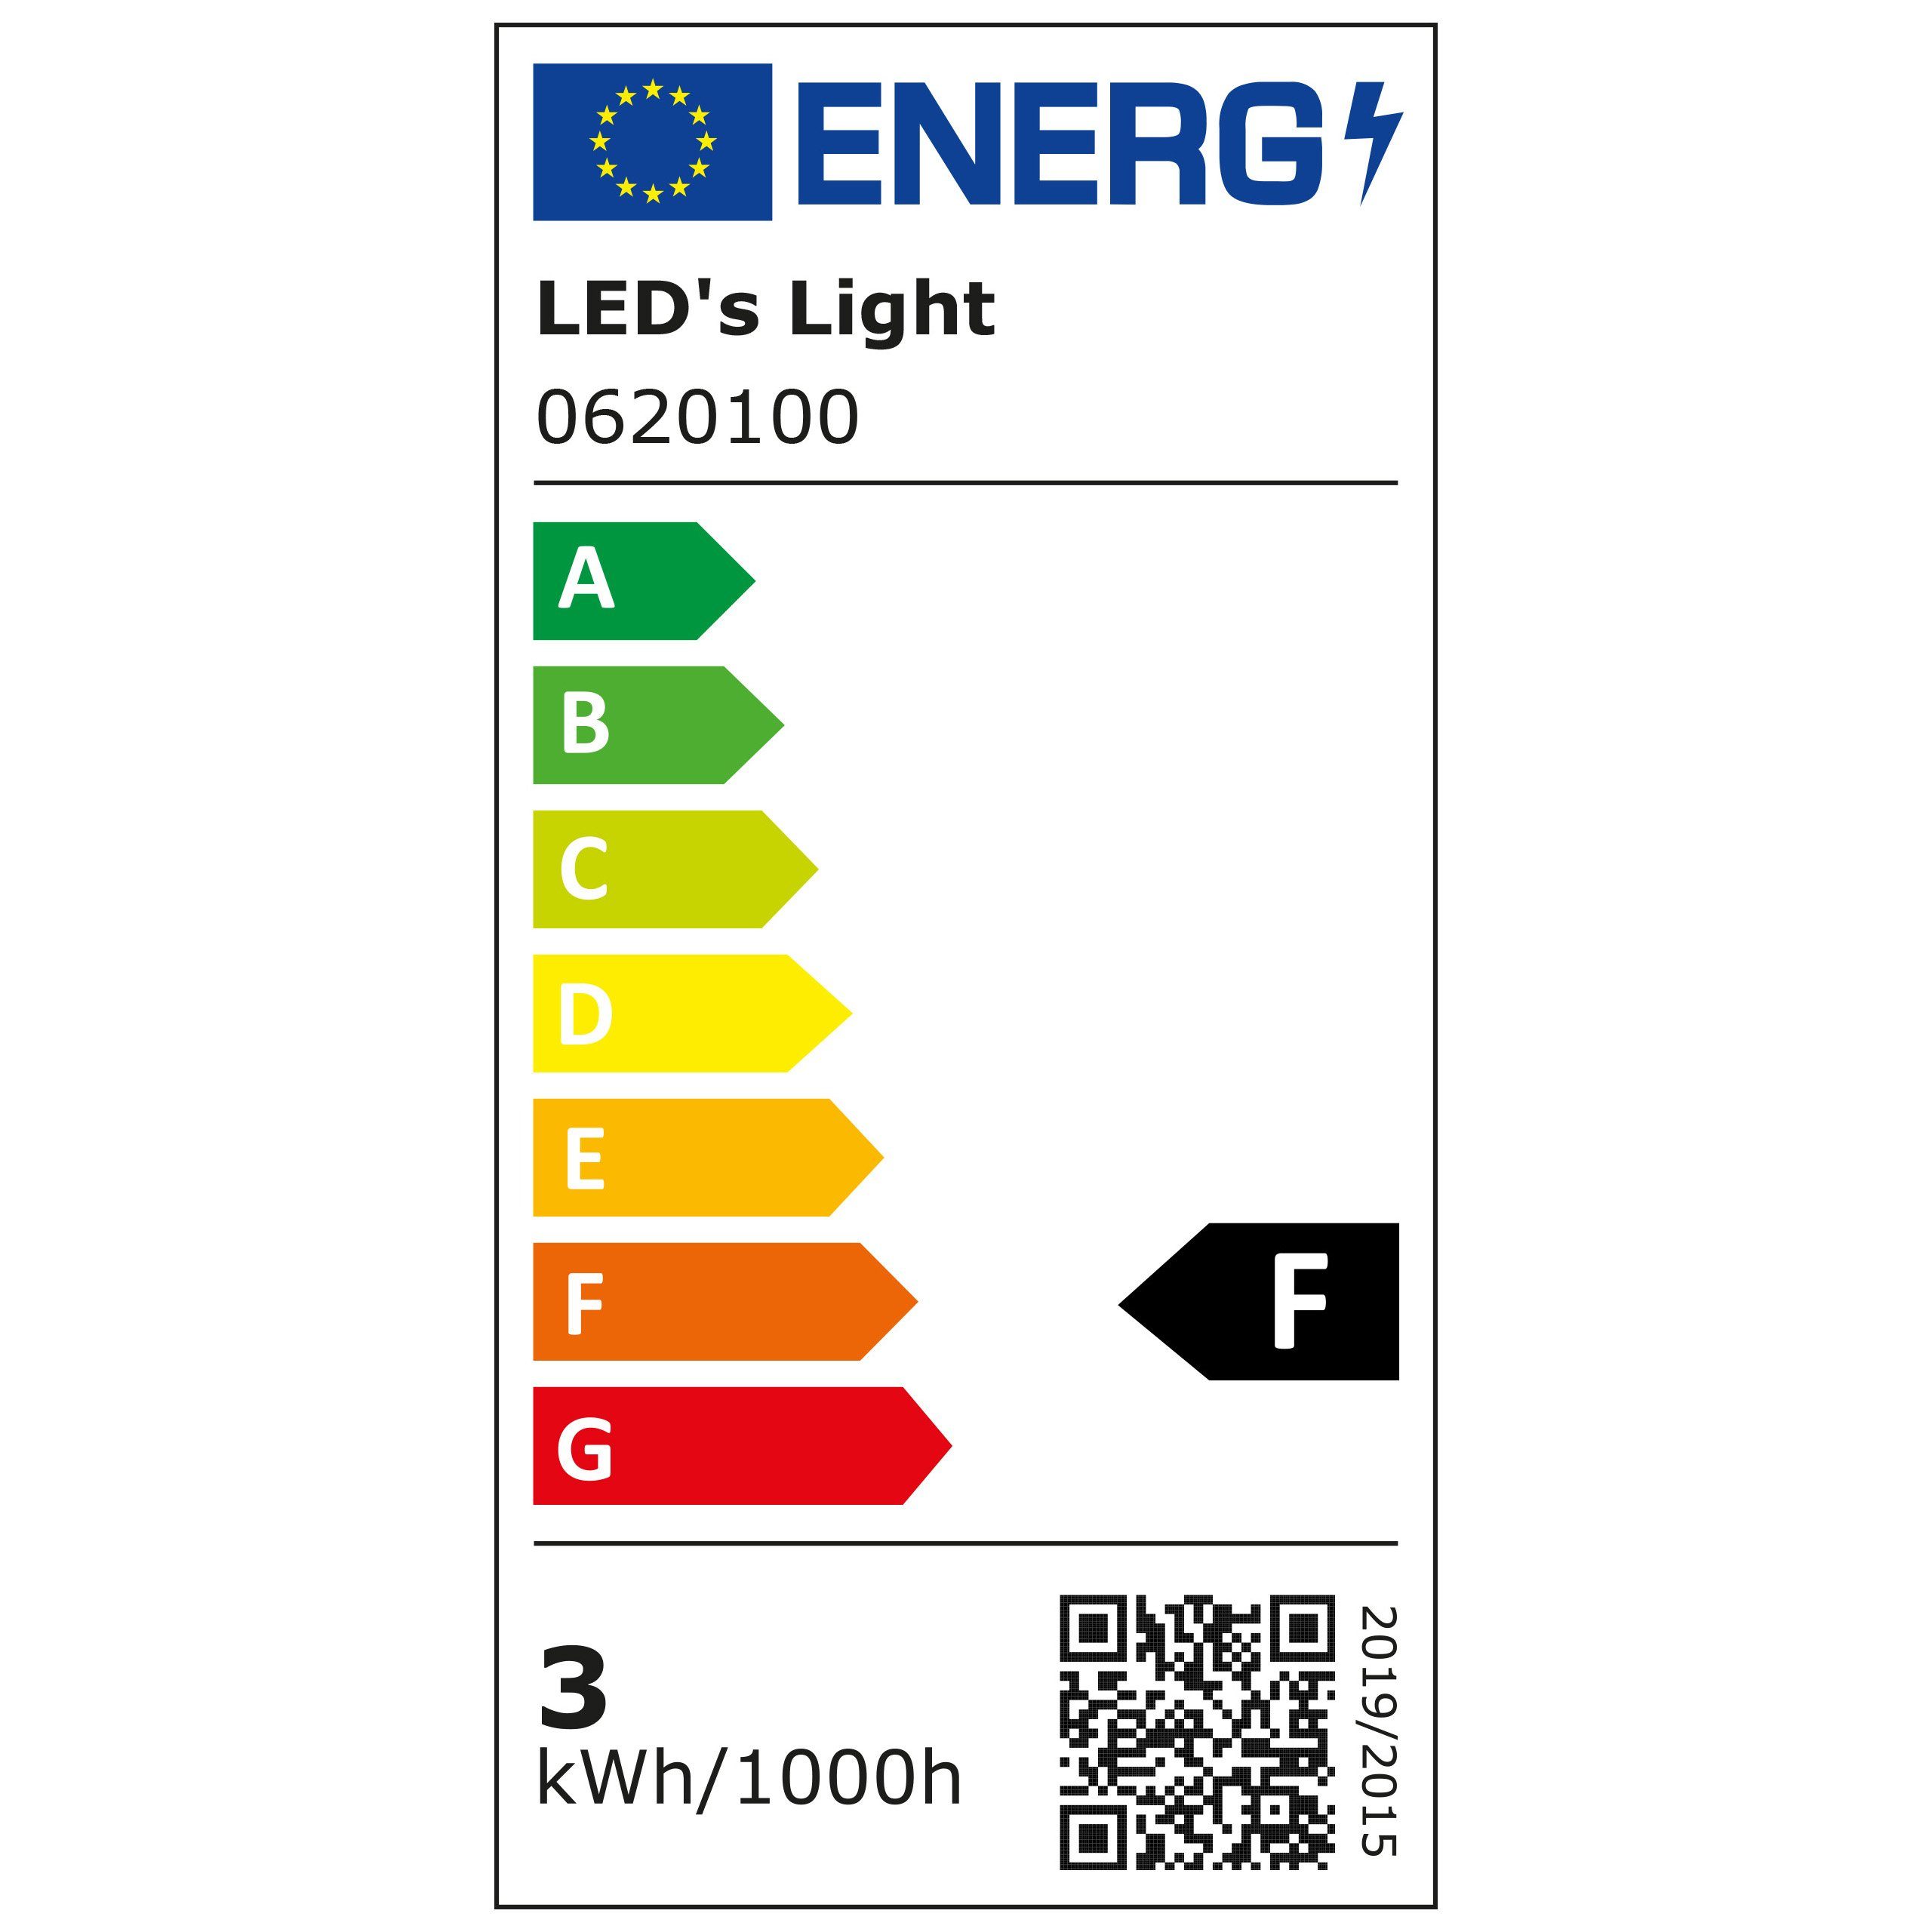 LED's warmweiß A60 E27, 2,5W light Birne, LED Opal 0620100 E27 LED-Leuchtmittel